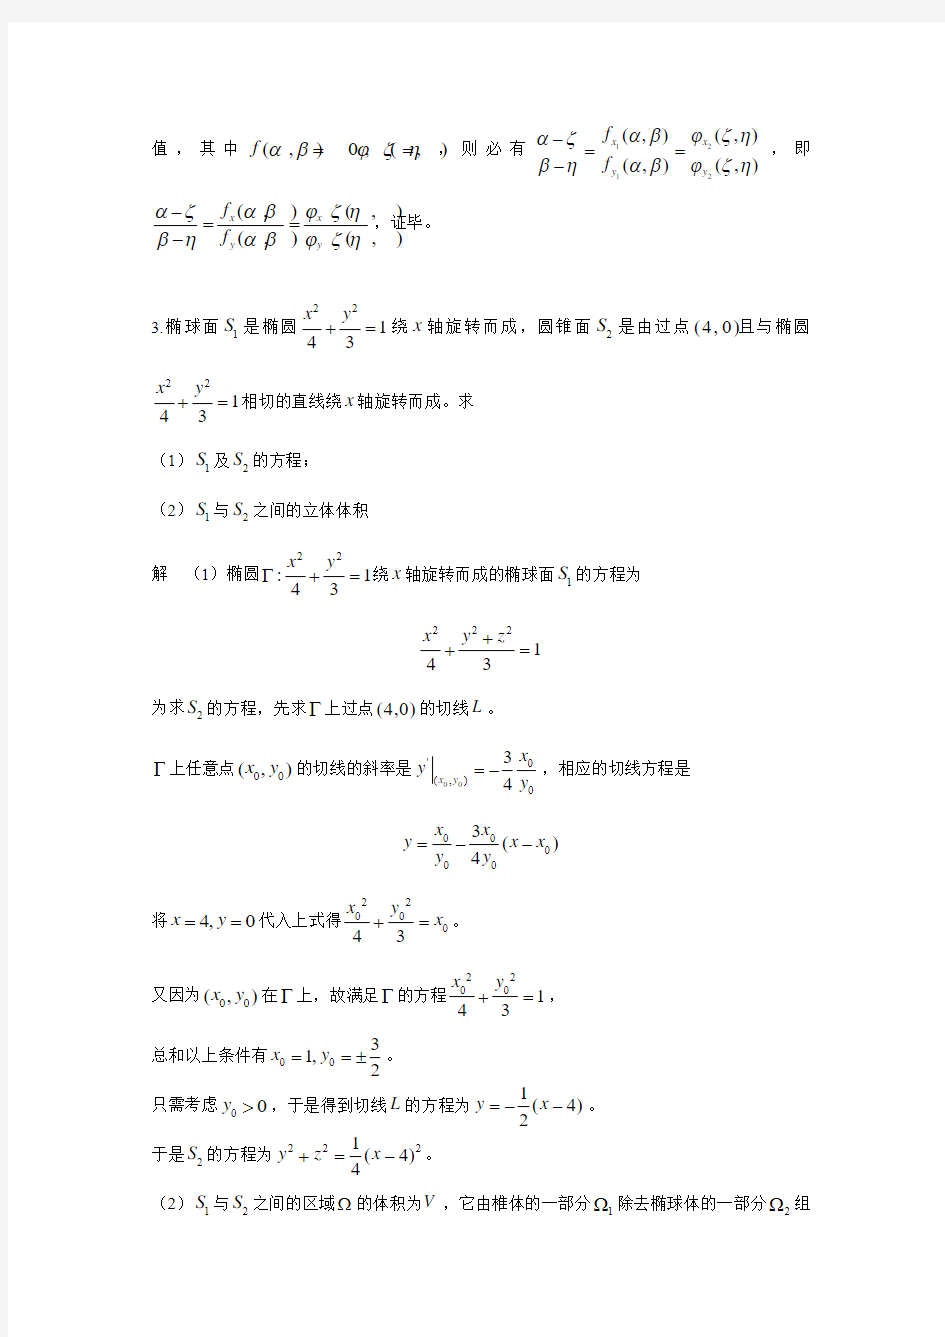 江苏省高等数学竞赛试题-解析几何部分